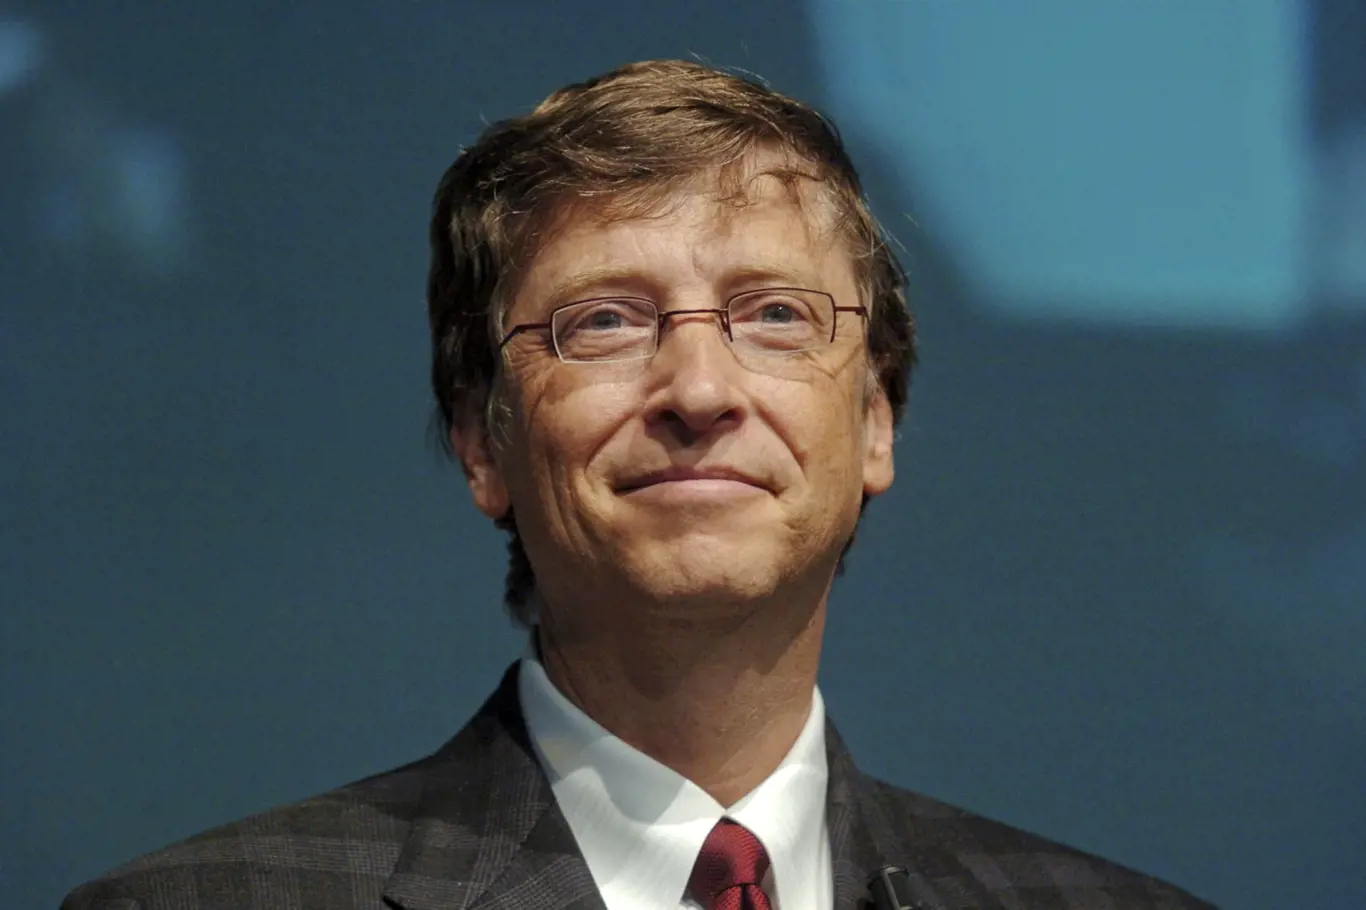 Co náš čeká podle Billa Gatese?